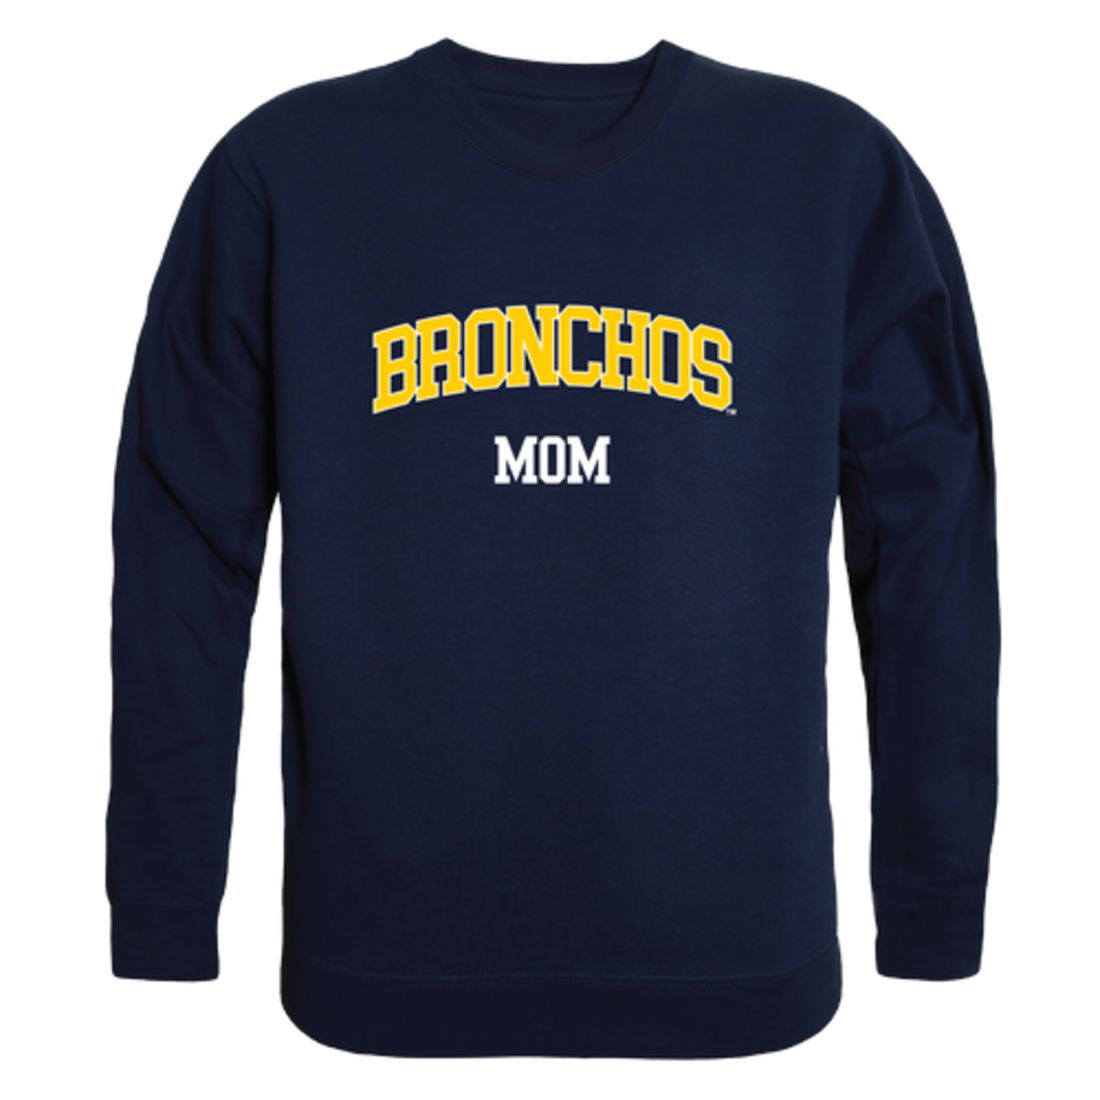 University of Central Oklahoma Bronchos Mom Fleece Crewneck Pullover Sweatshirt